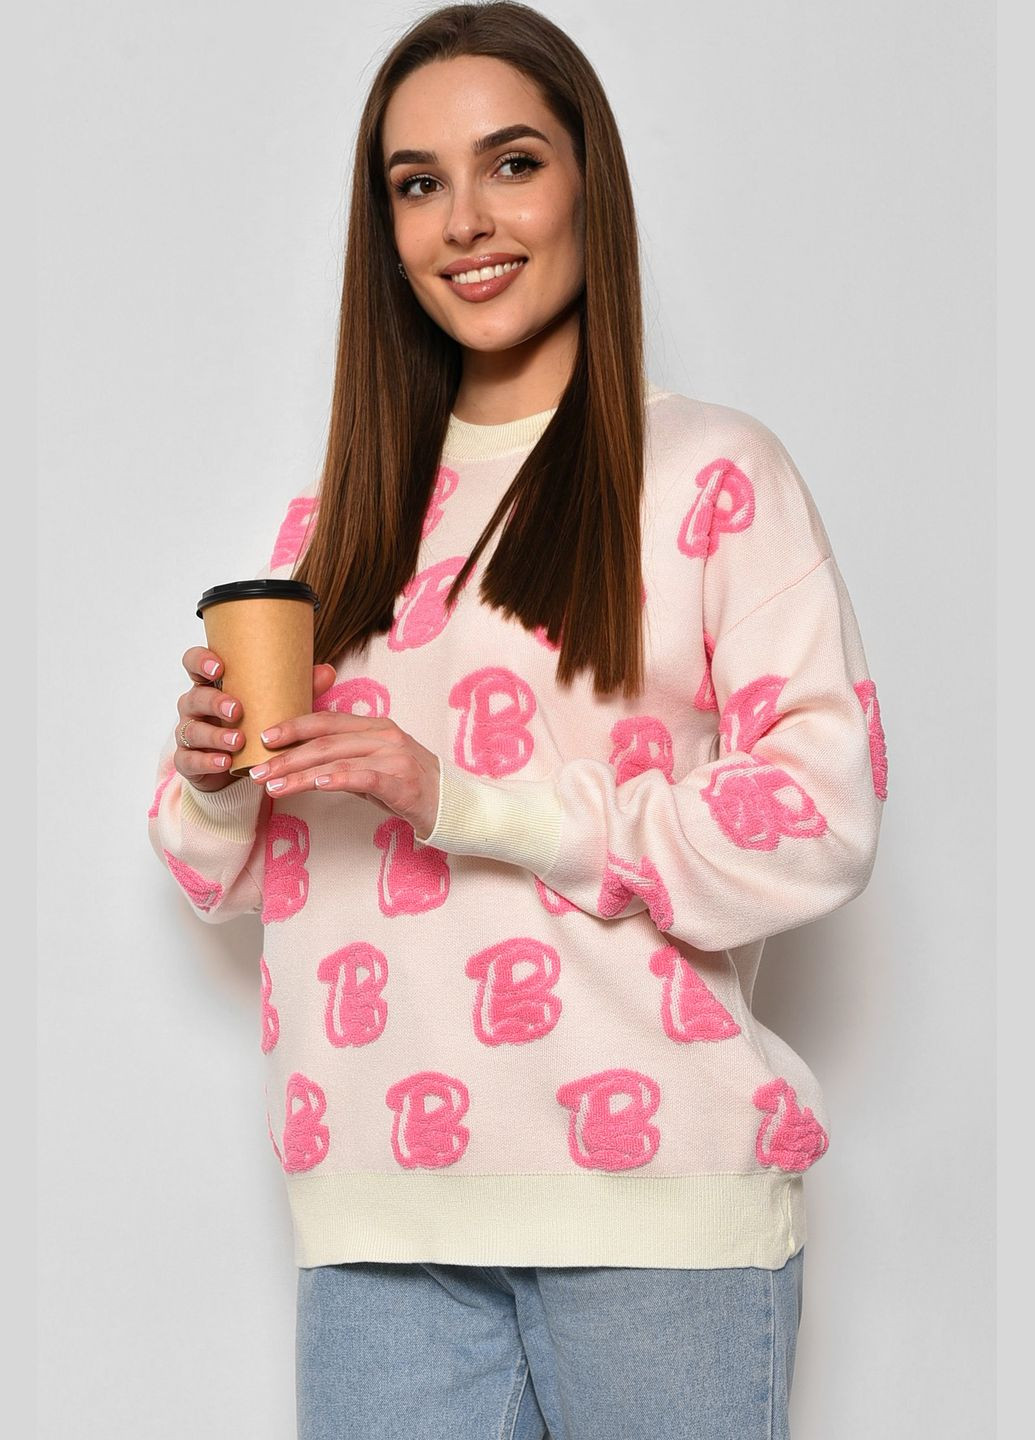 Молочный зимний свитер женский с принтом молочного цвета пуловер Let's Shop